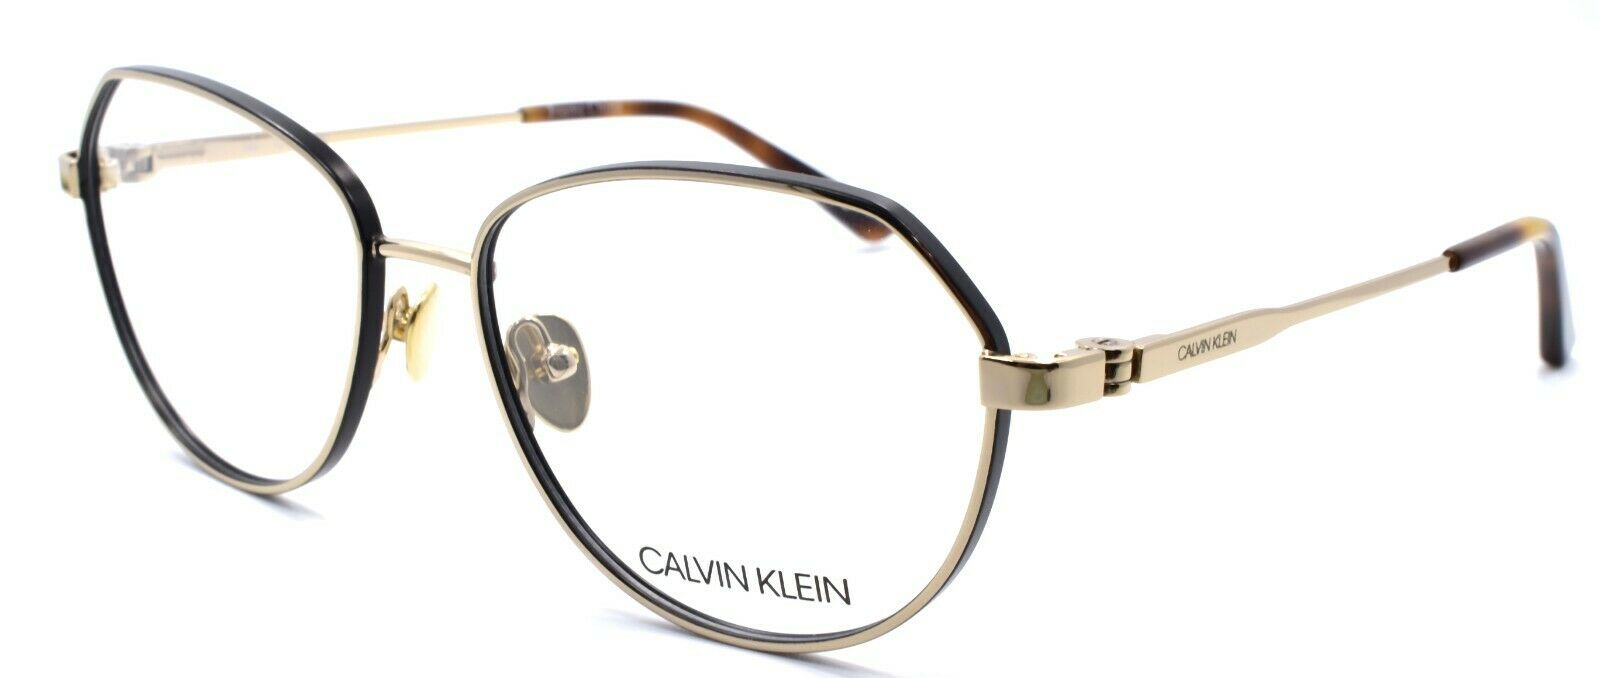 1-Calvin Klein CK19113 717 Women's Eyeglasses Frames 53-15-140 Gold-883901114409-IKSpecs